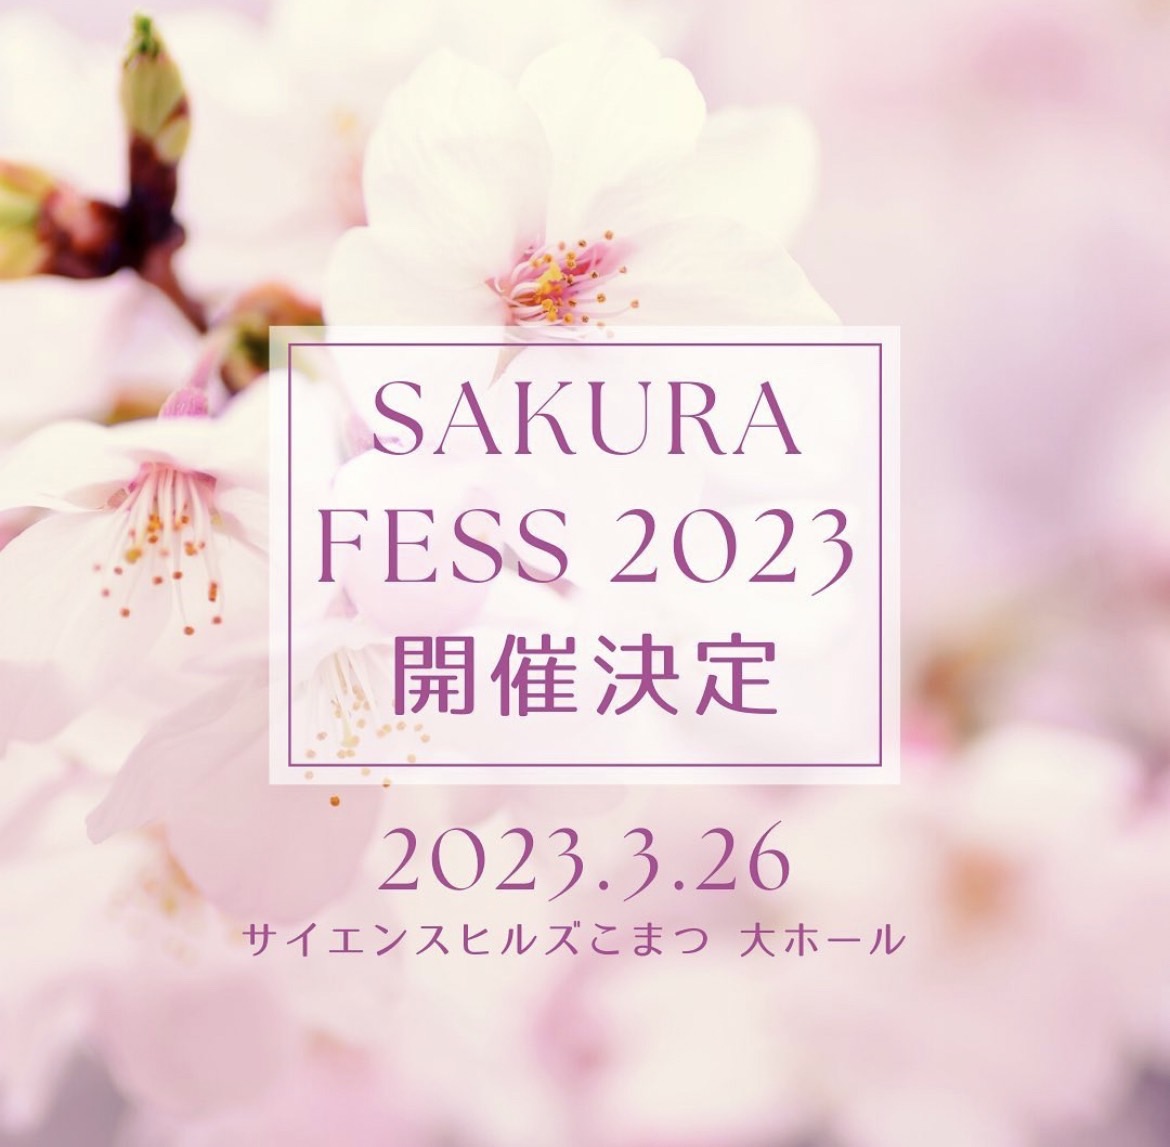 【出店者様募集中】2023.3.26 SAKURA FES 2023 開催